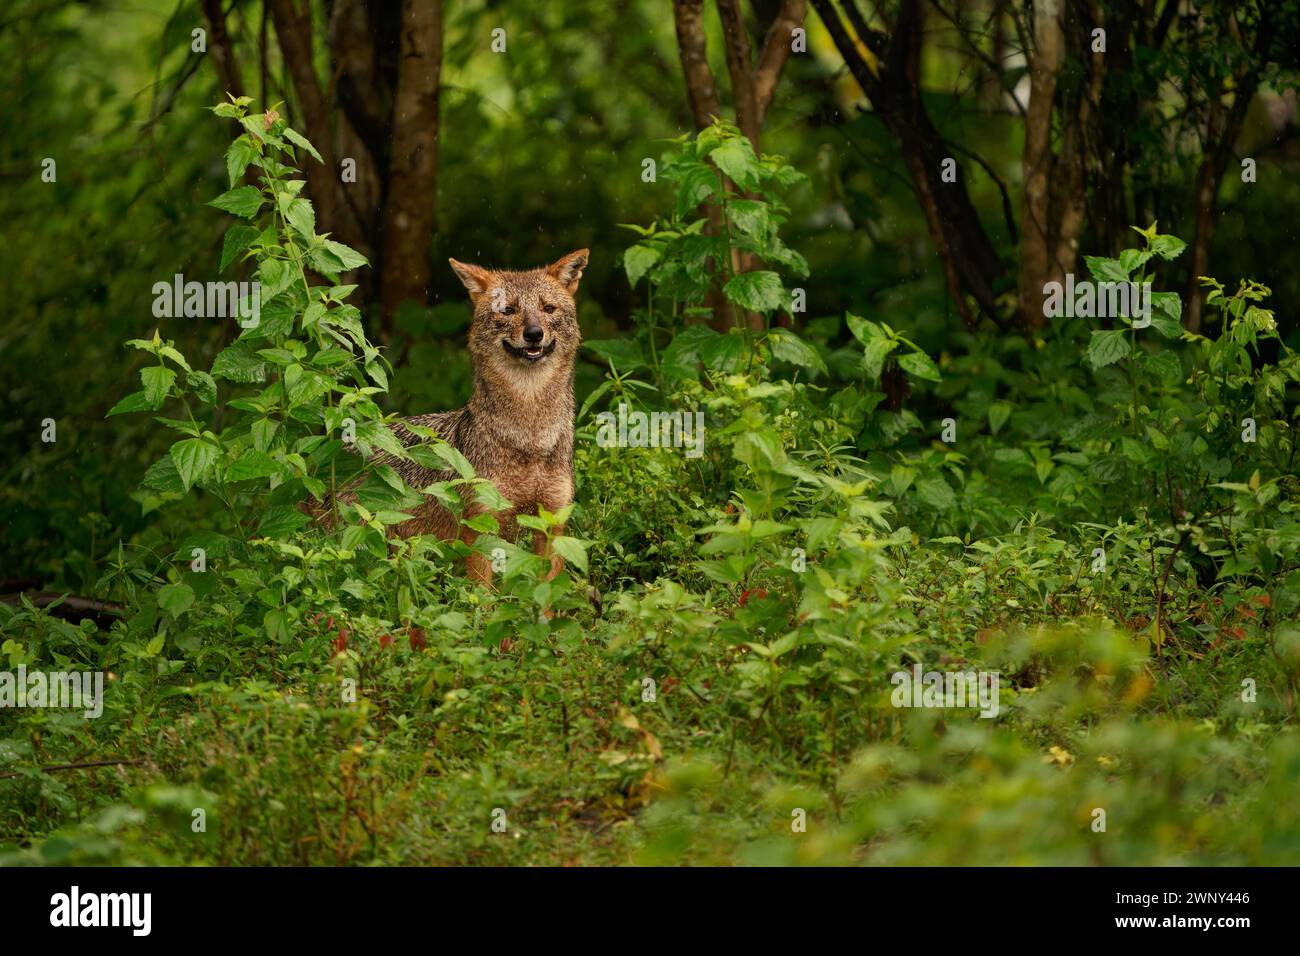 Golden Sri Lanka o Southern Indian Jackal - Canis aureus naria, sottospecie di sciacallo dorato originario dell'India meridionale e dello Sri Lanka, canide simile a lupo Foto Stock